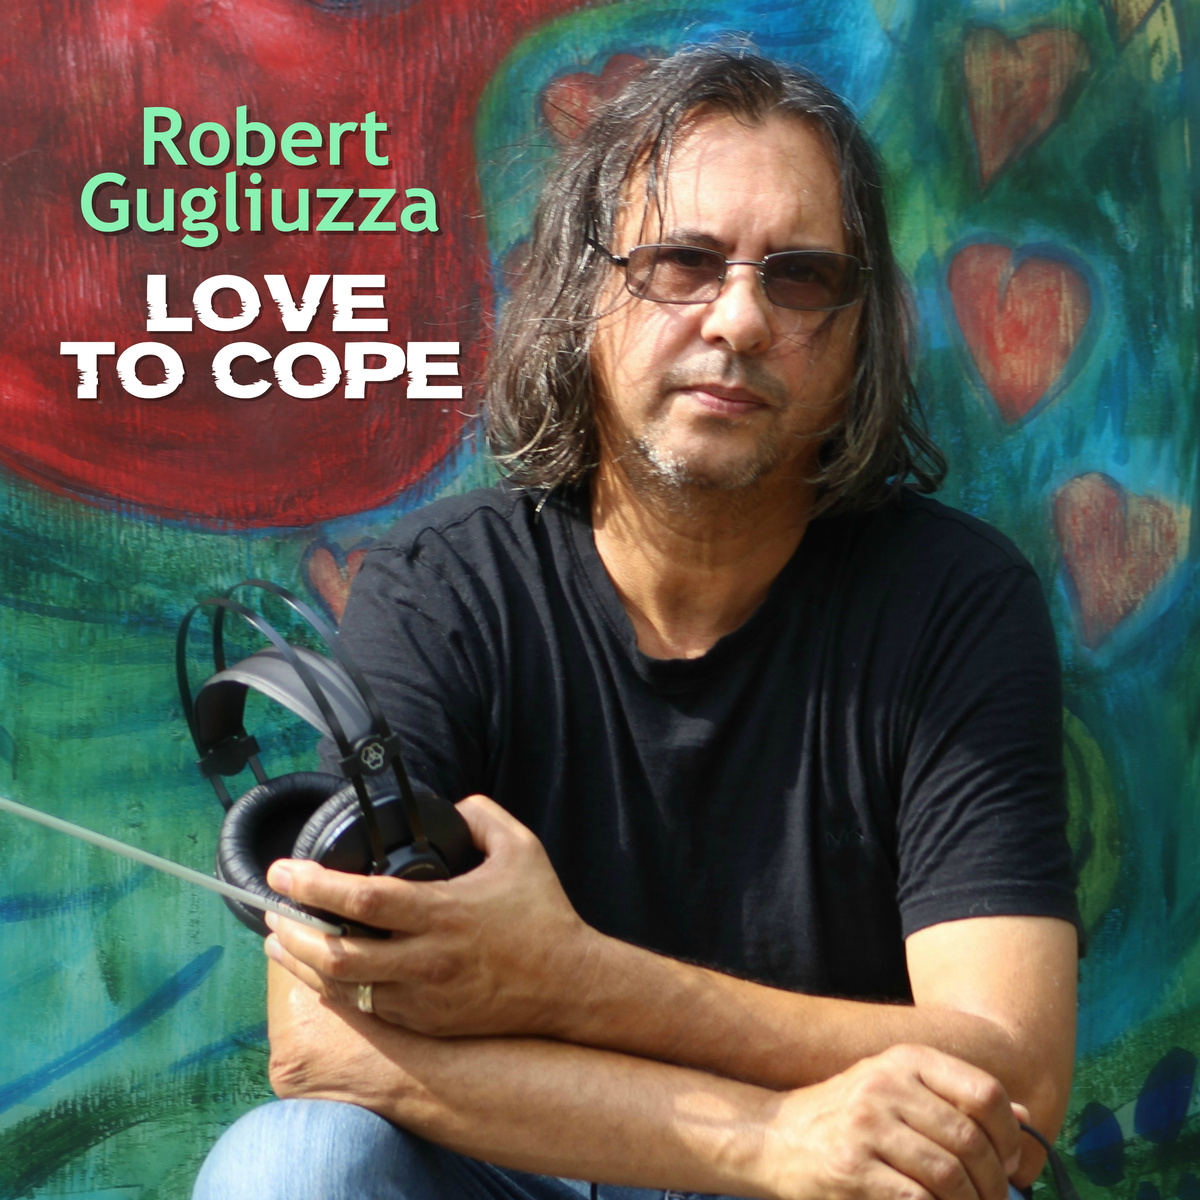 Robert Gugliuzza Releases 'Love to Cope' Video